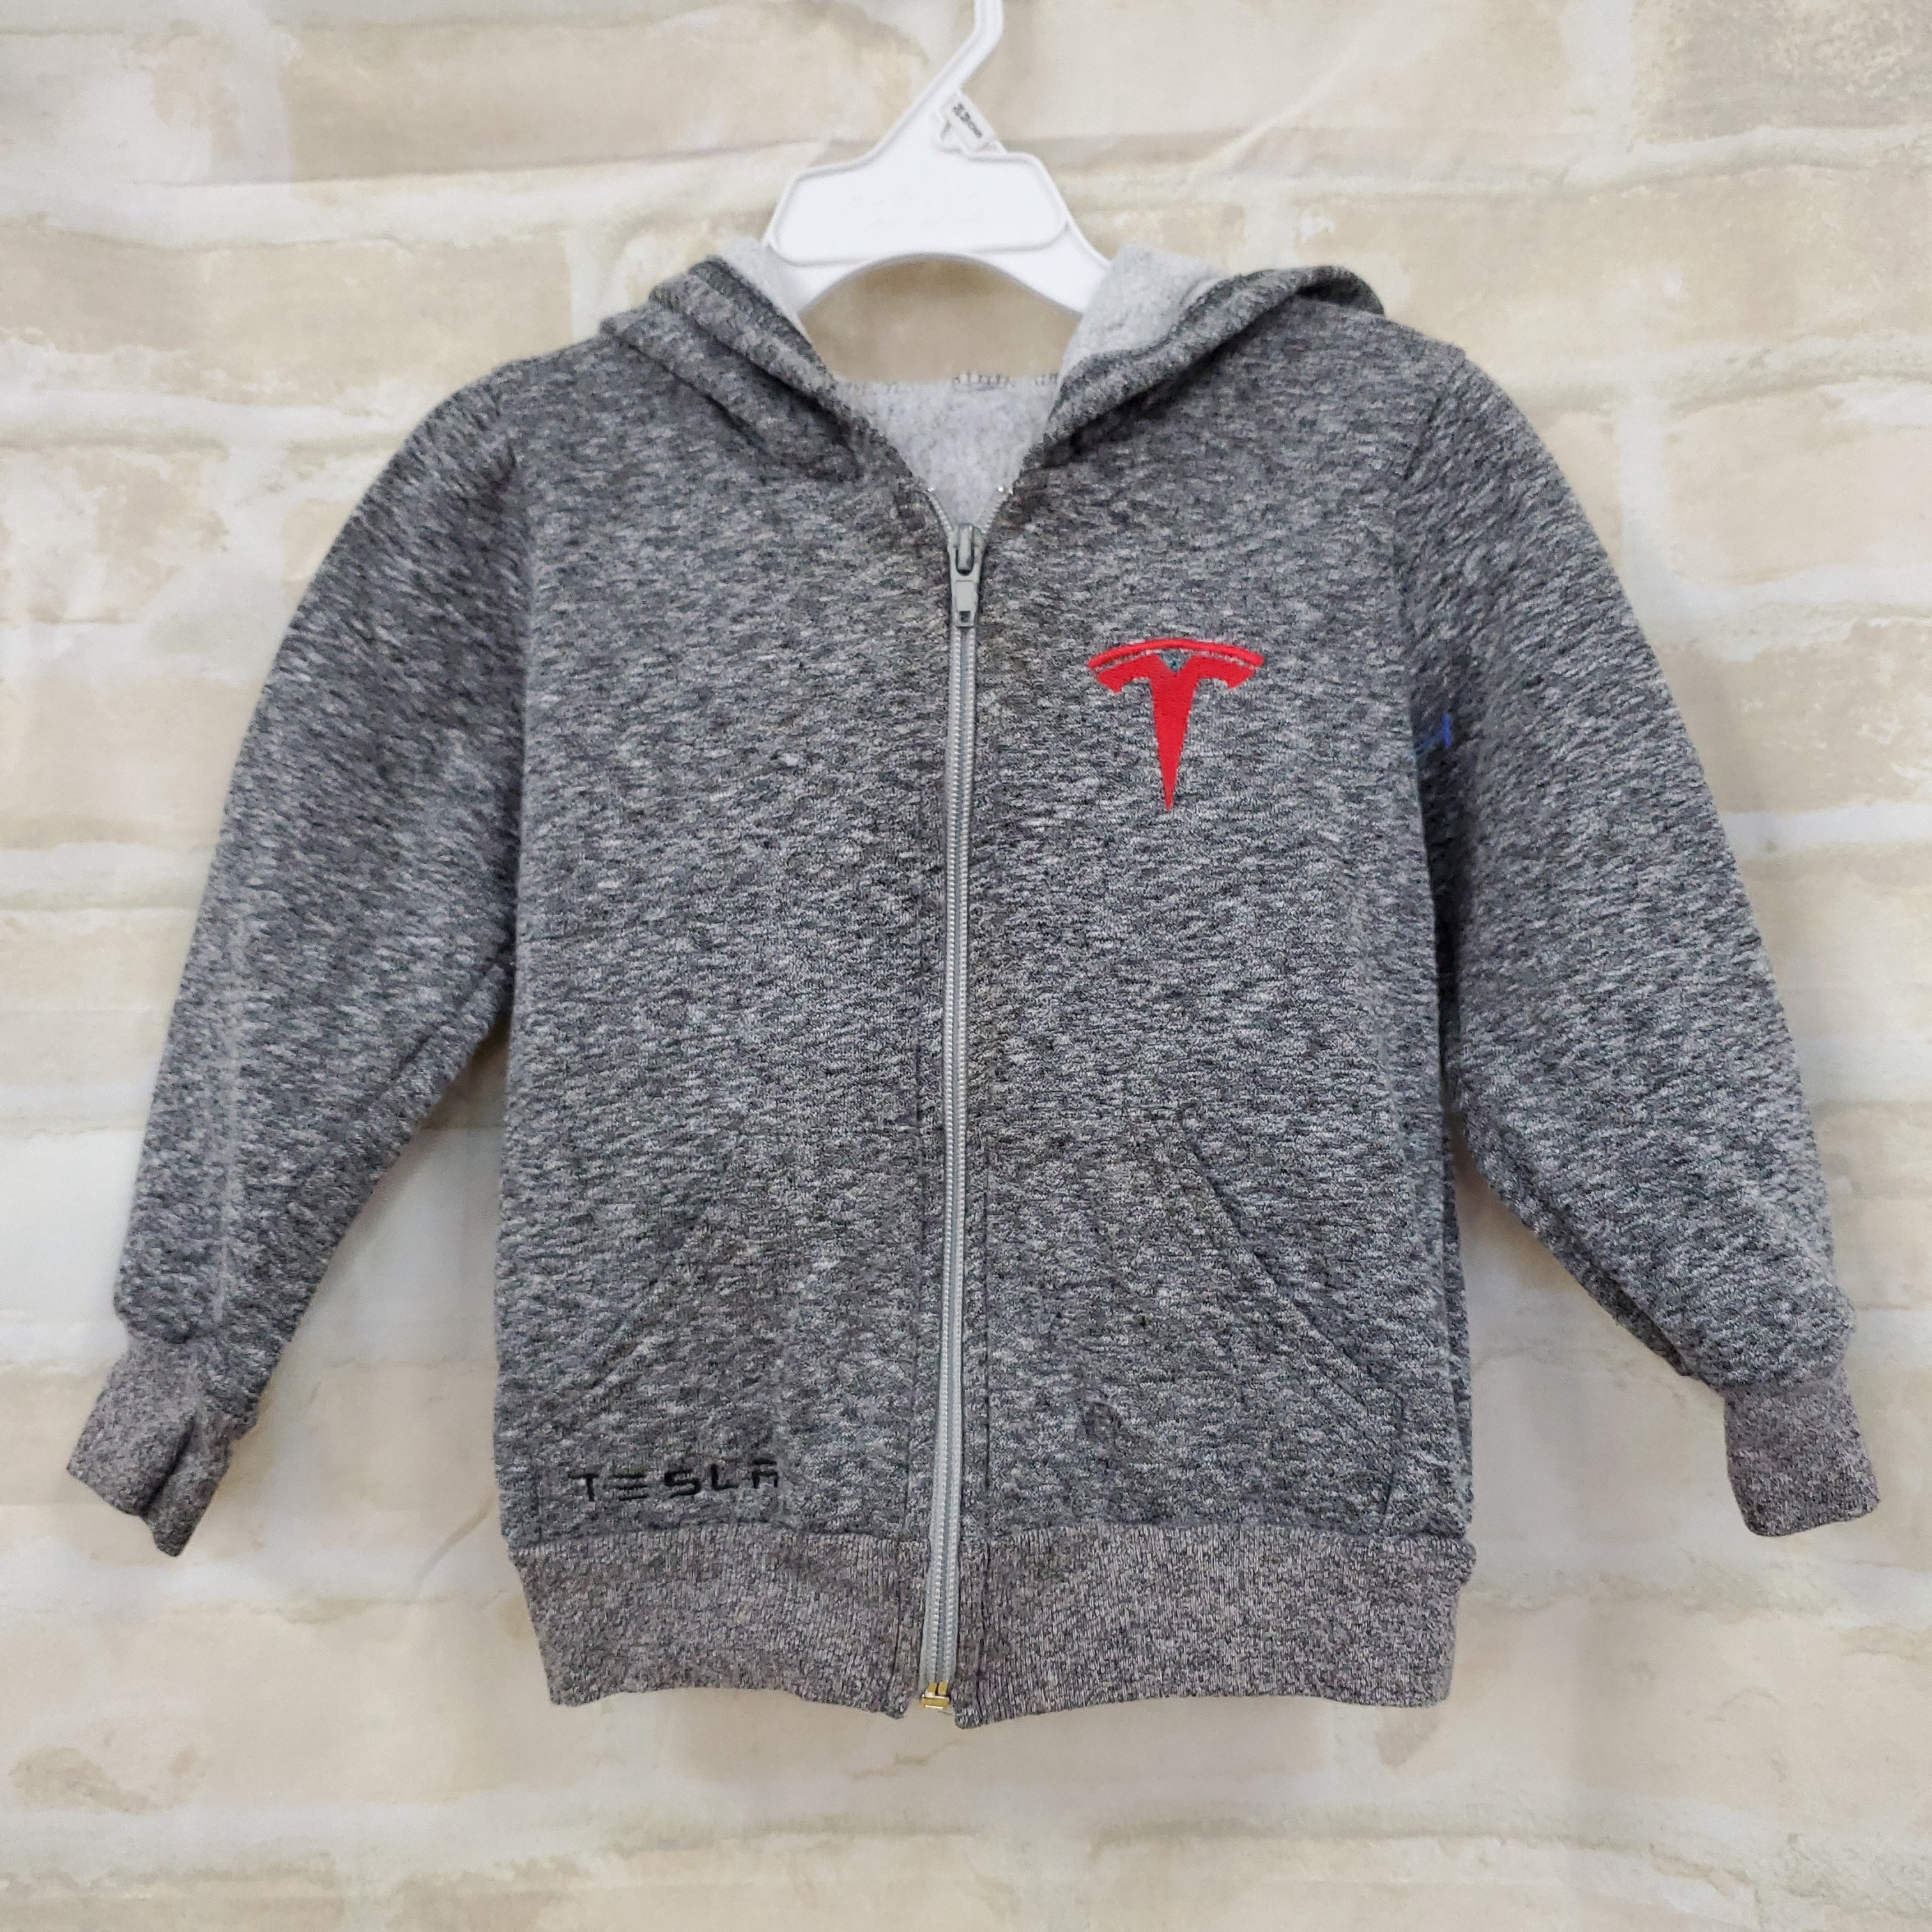 Tesla boys jacket gray sweatshirt hooded zip up 3